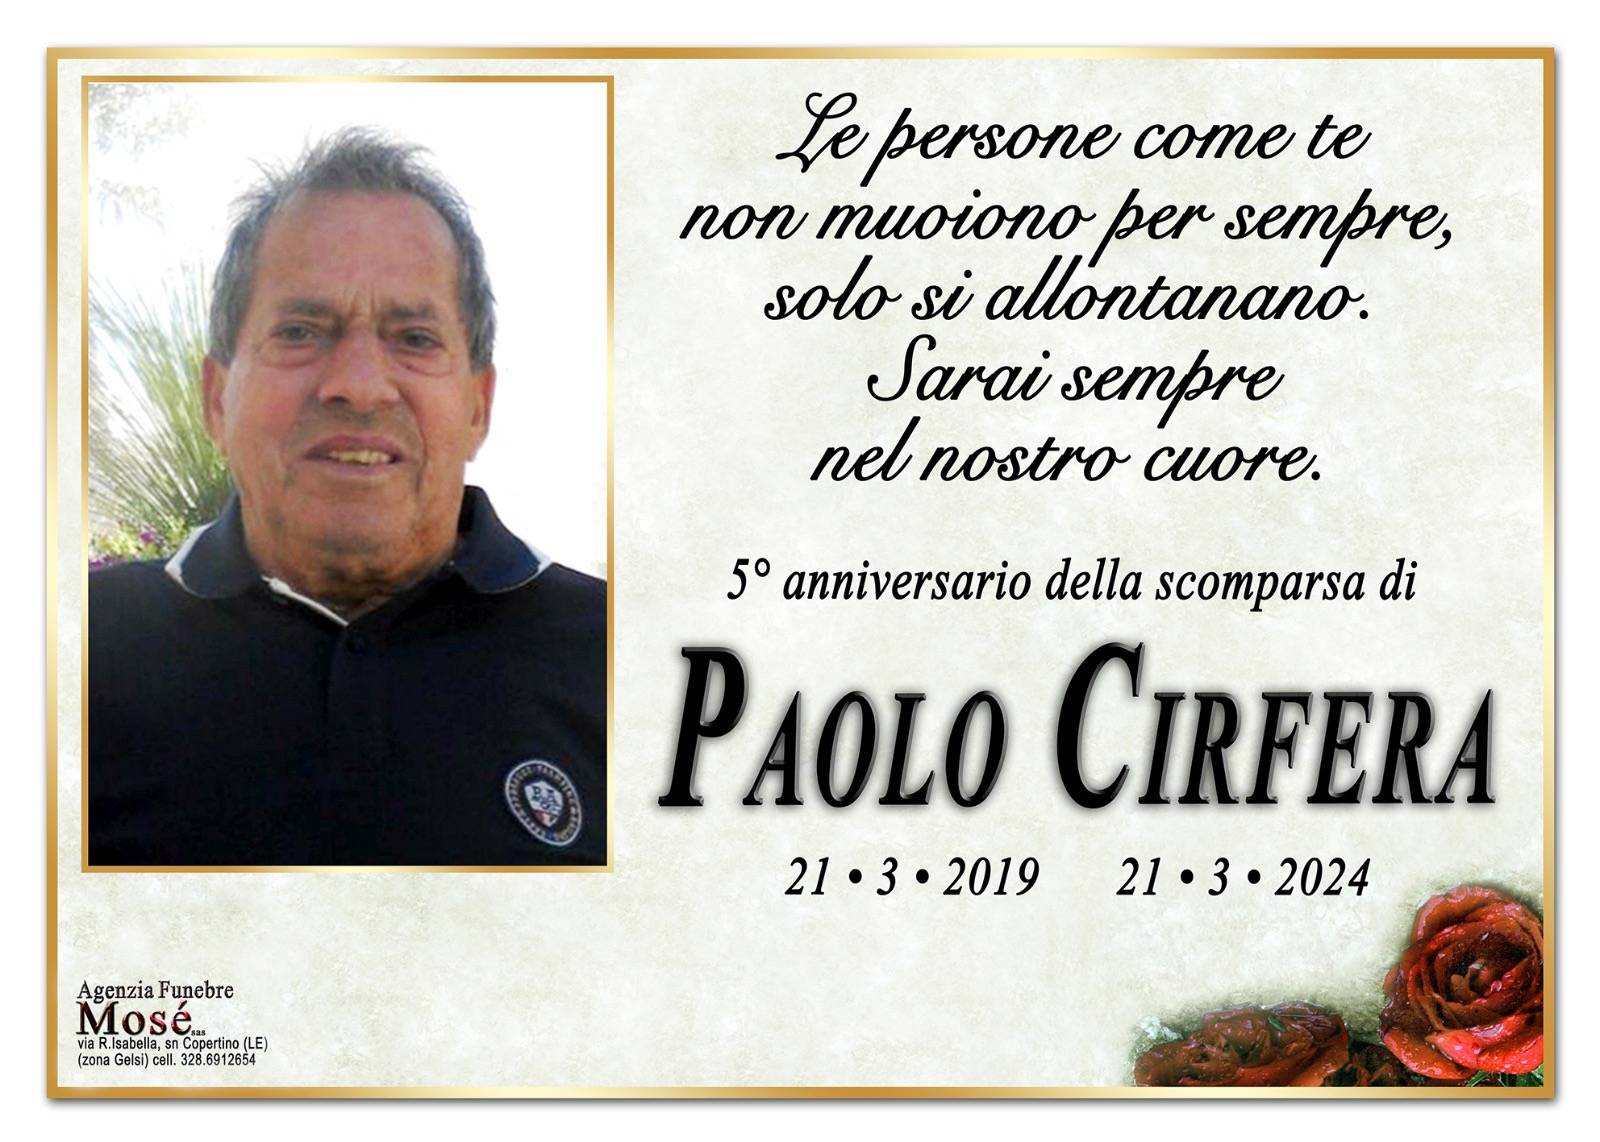 Paolo Cirfera